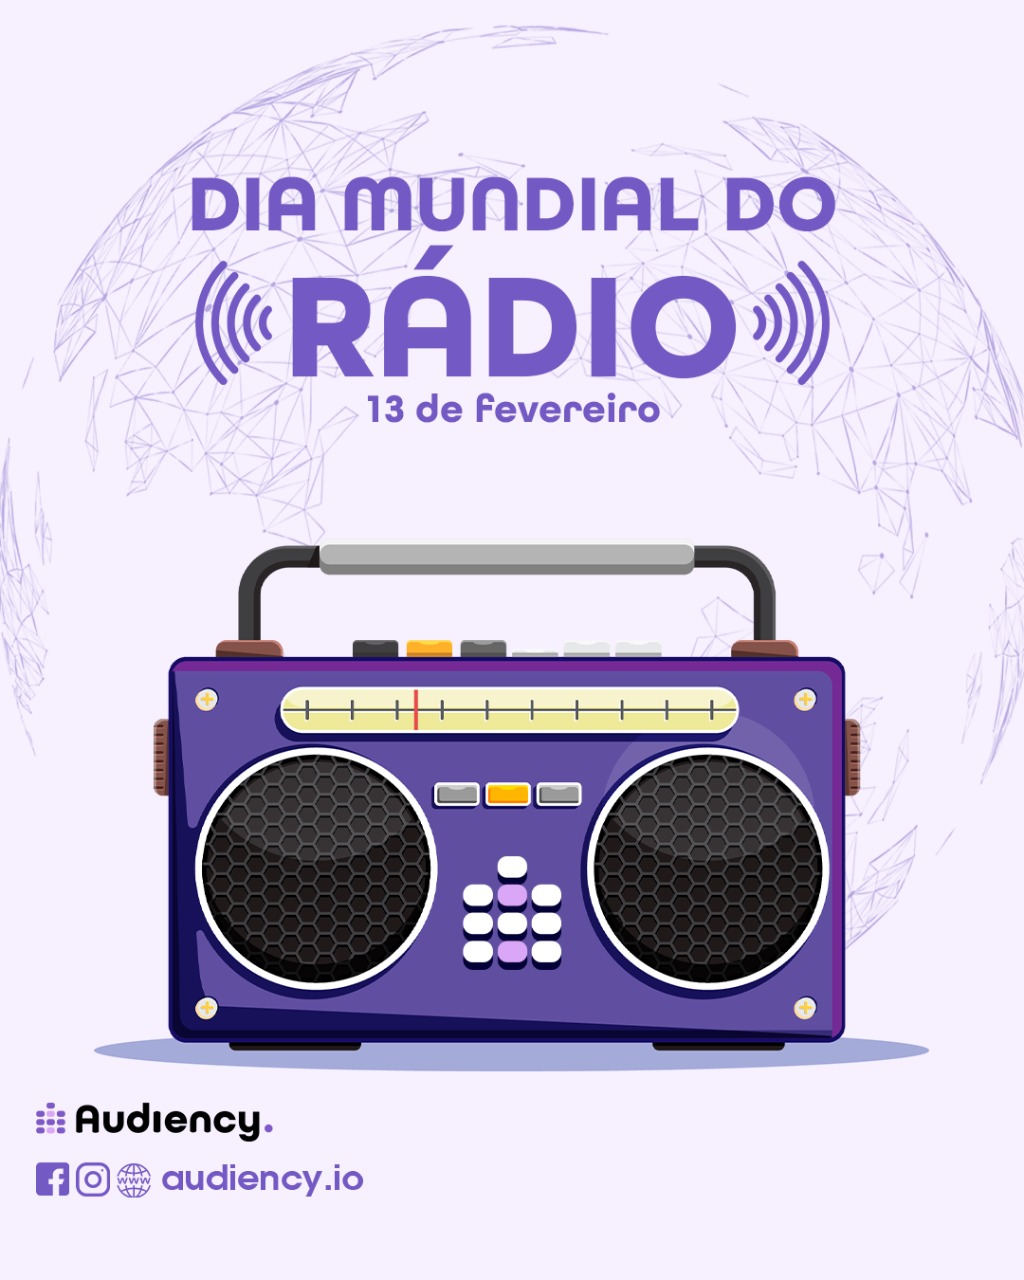 Dia mundial do rádio